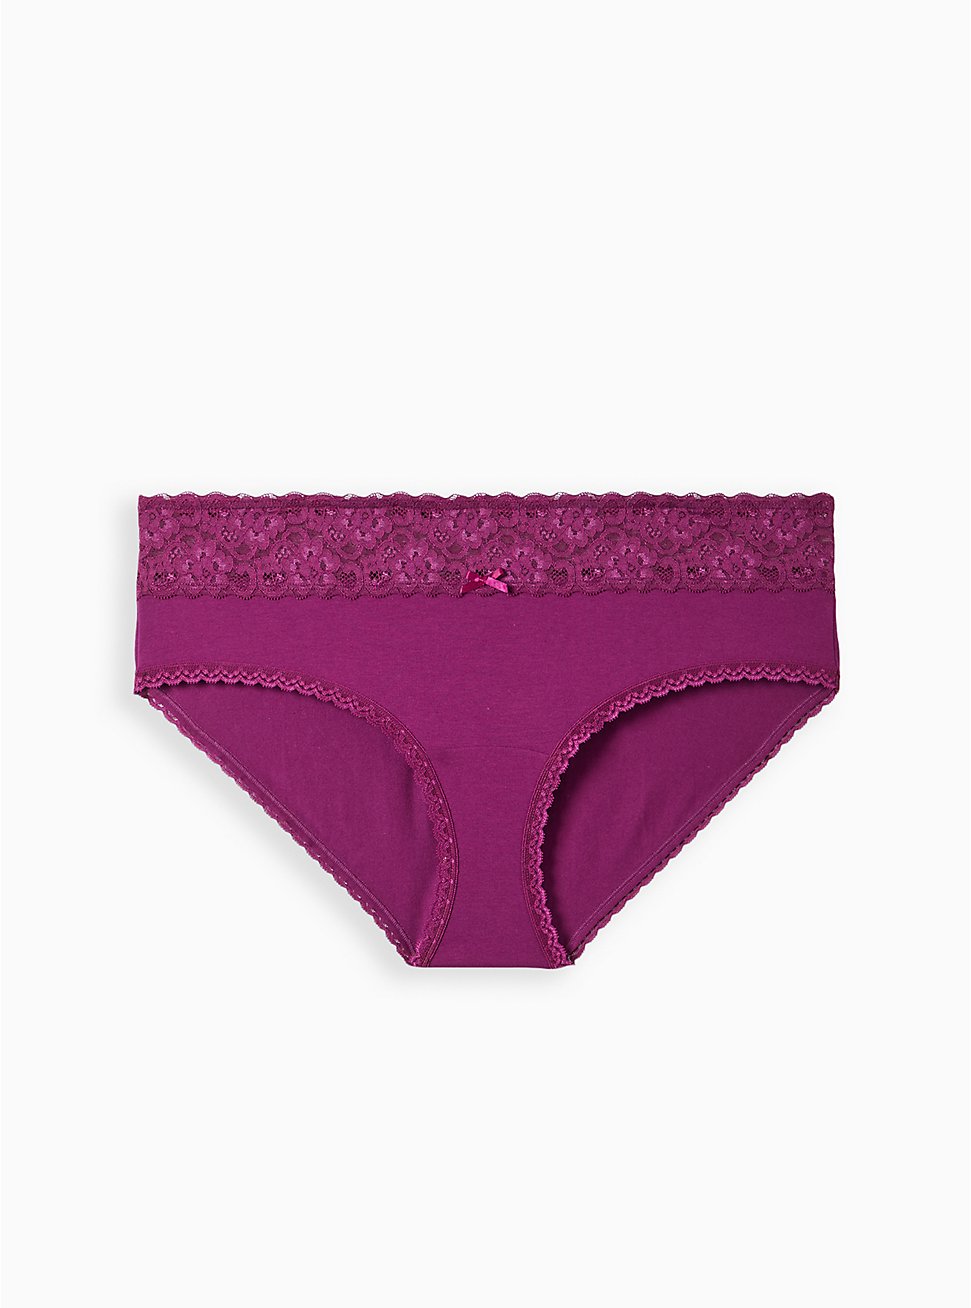 Plus Size Wide Lace Hipster Panty - Cotton Purple, PLUM CASPIA, hi-res